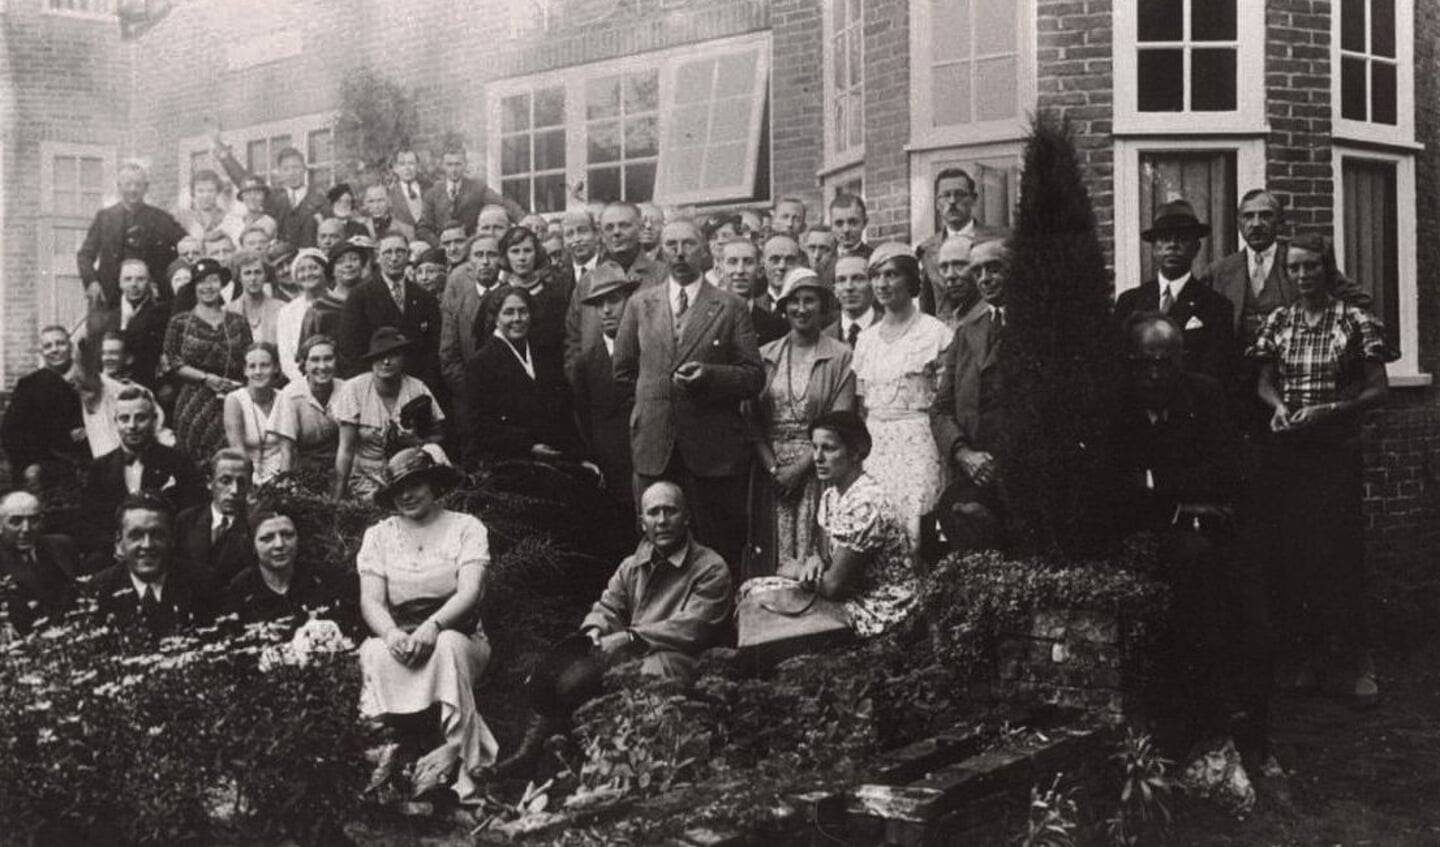 De foto is gemaakt bij de opening van het NSB-kringhuis in Bilthoven in 1934. Onder de aanwezigen was ook Cornelis van Geelkerken, die in 1931 een van de oprichters van de NSB was geweest. 